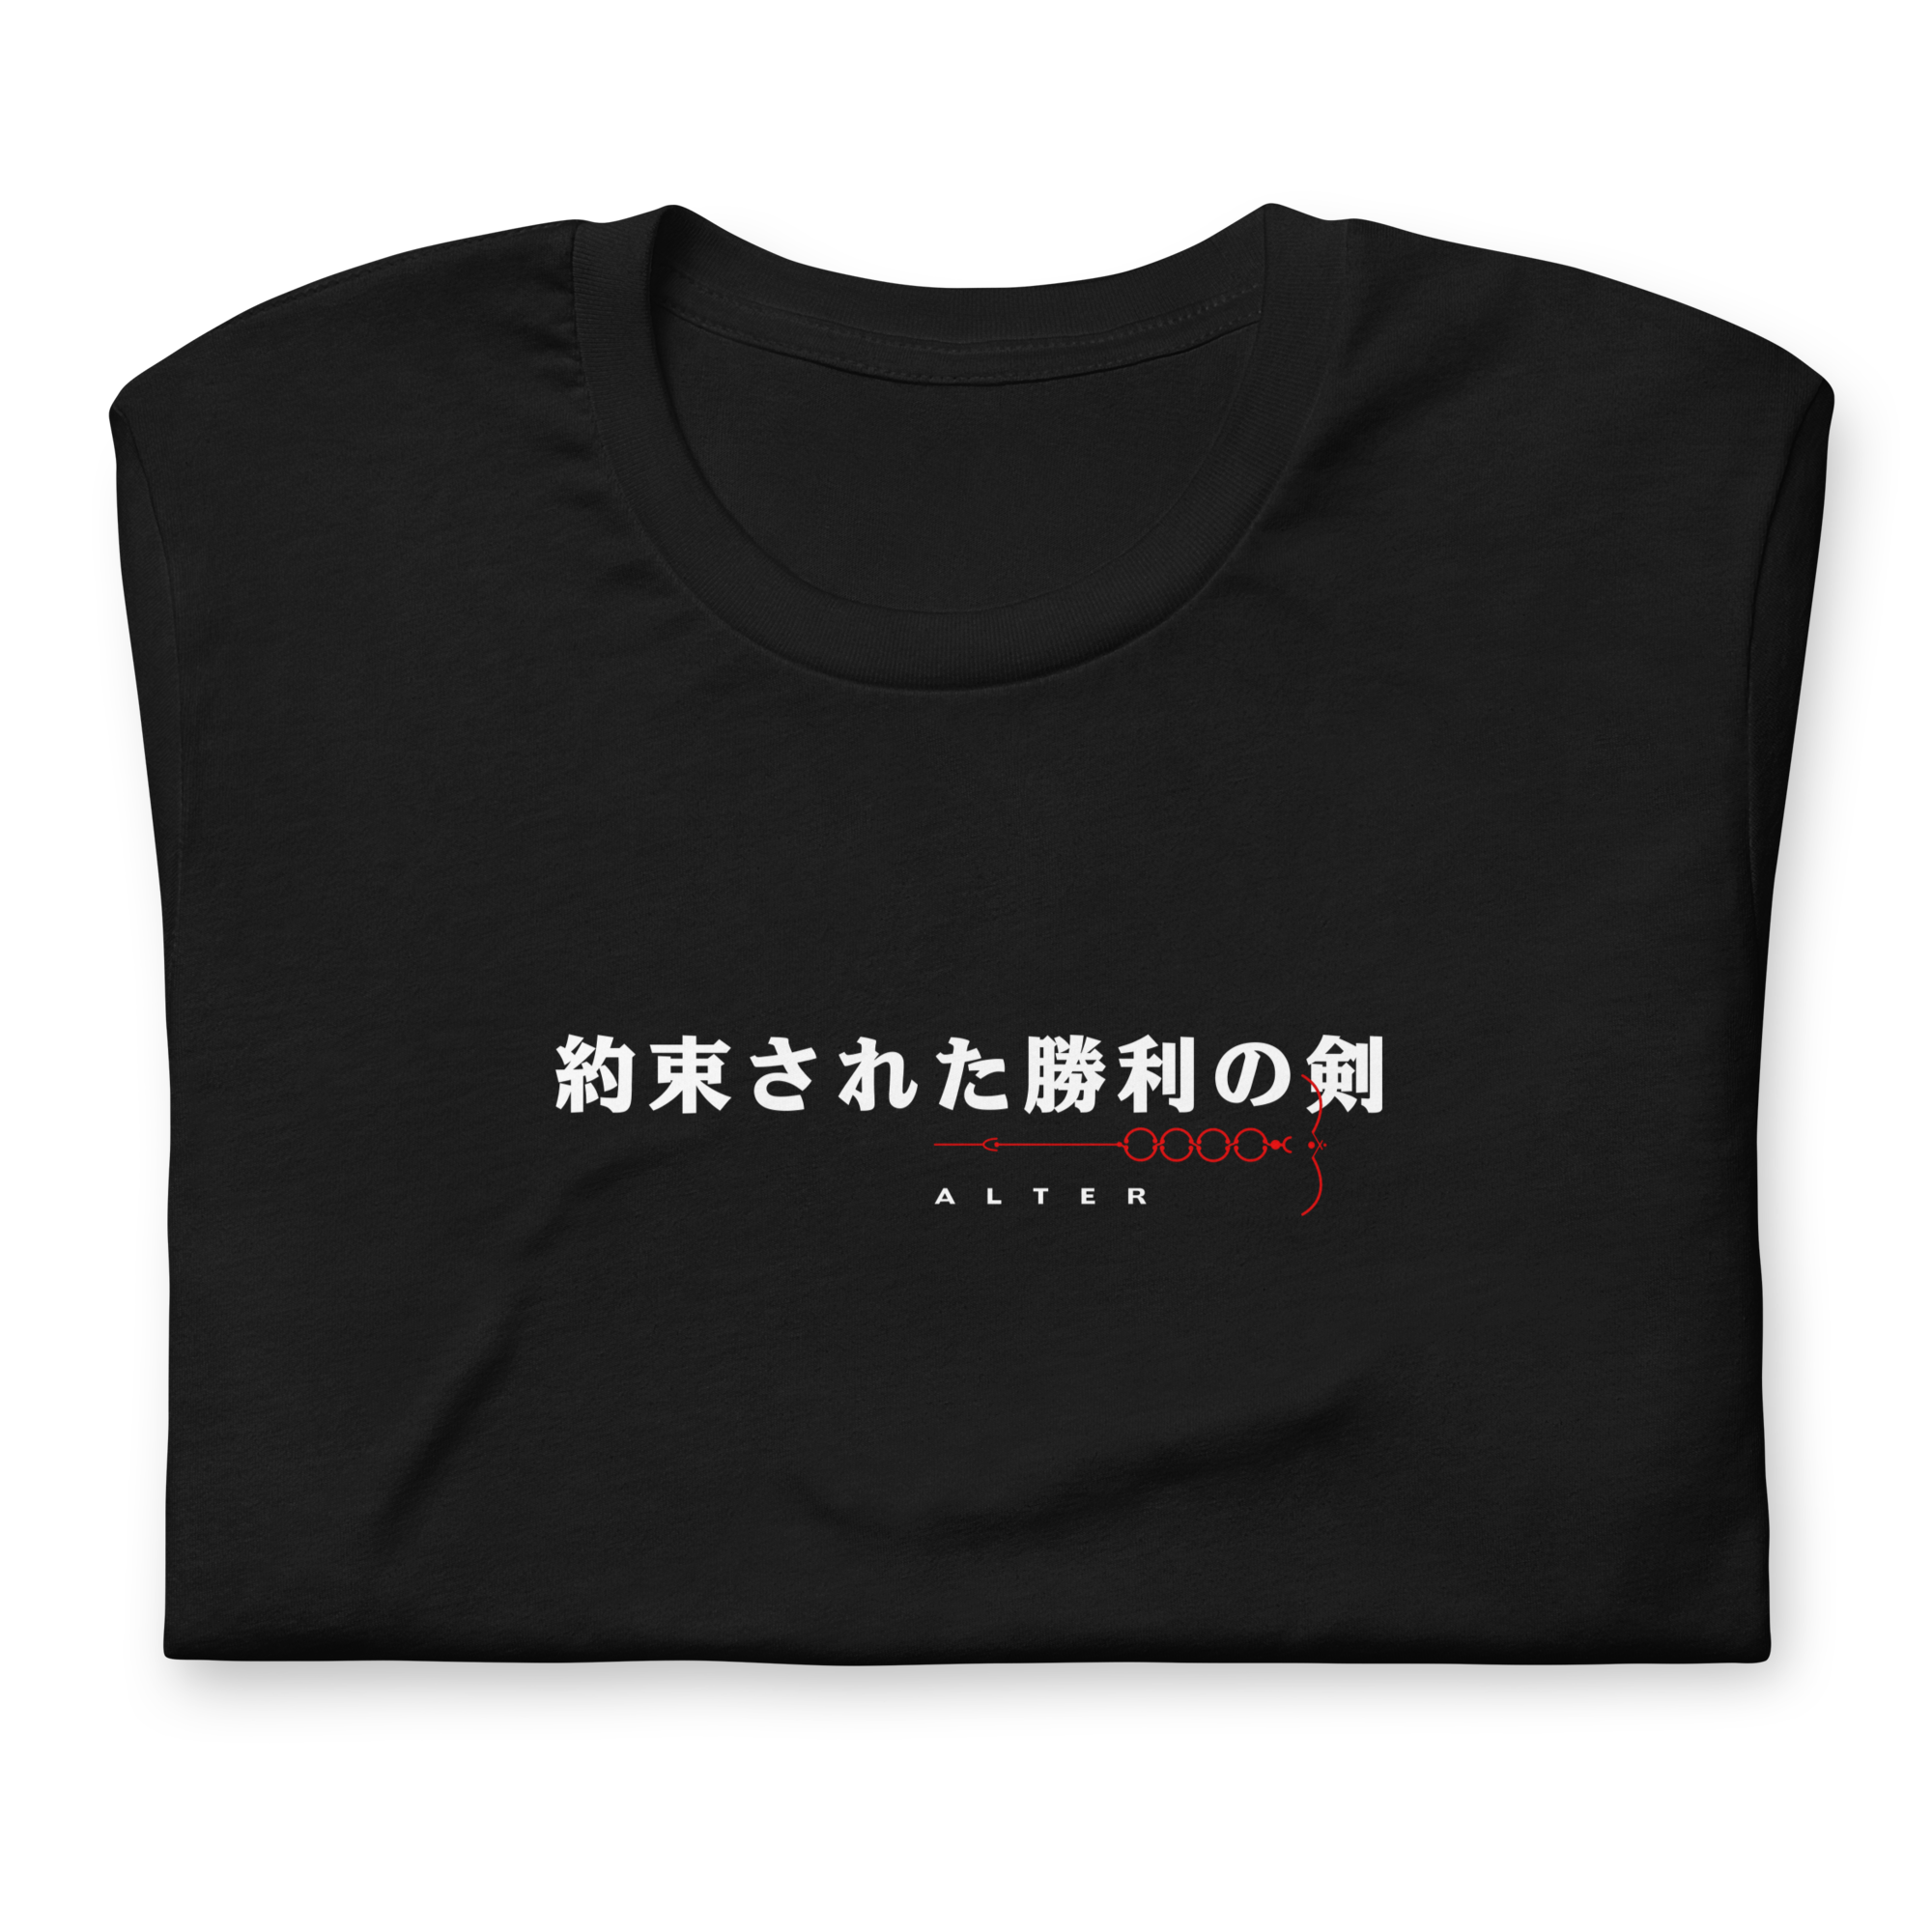 Saber (ALTER) - T-Shirt Back Print